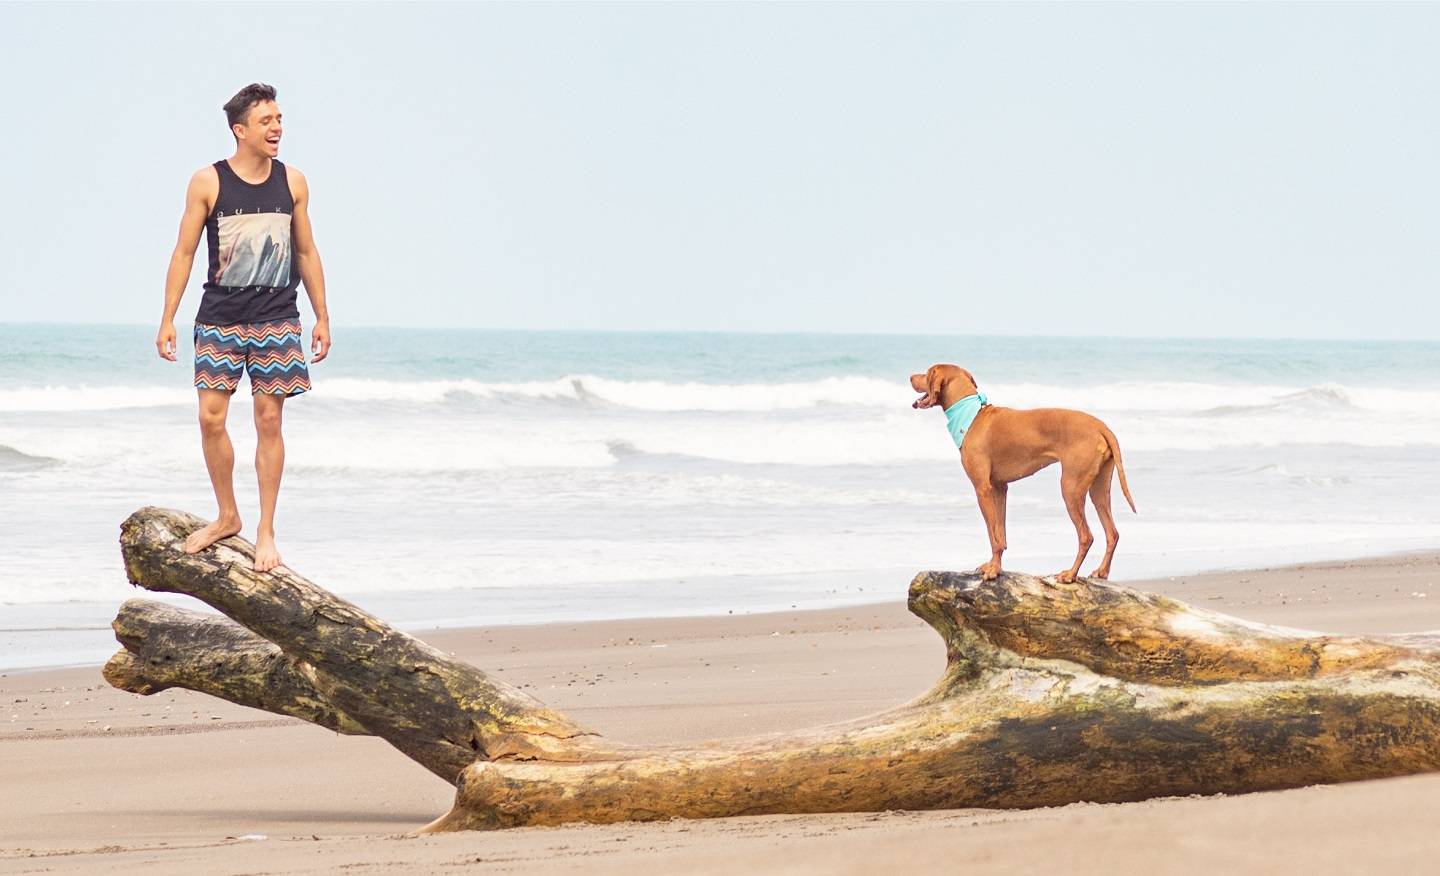 Man with dog on beach